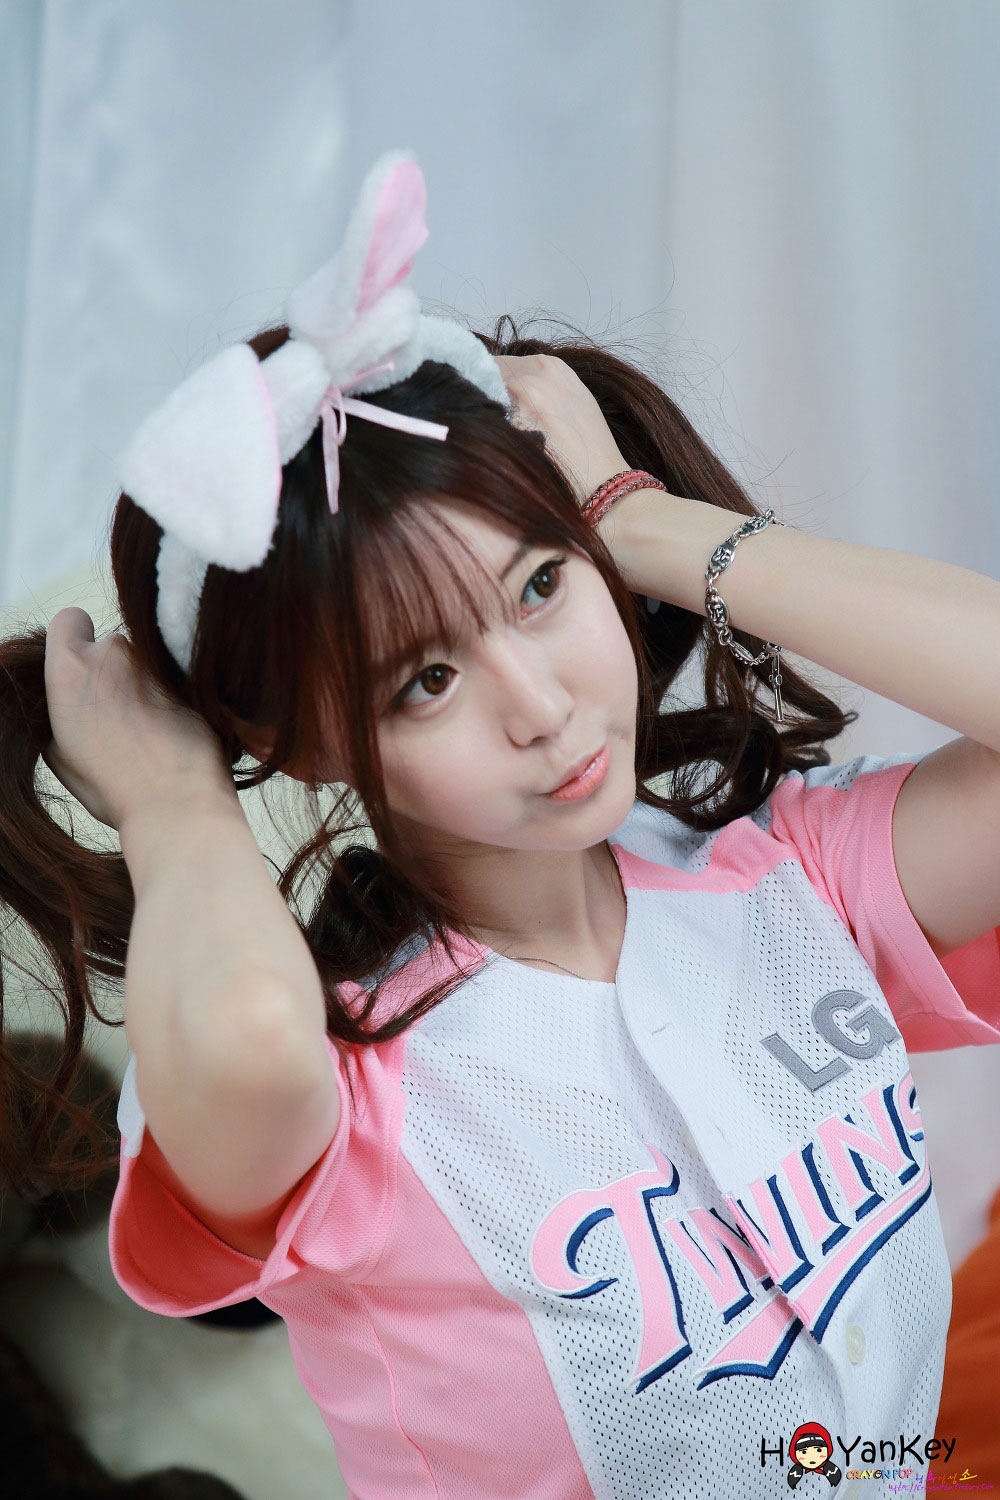 Baseball girl Choi Seul Gi photoshoot